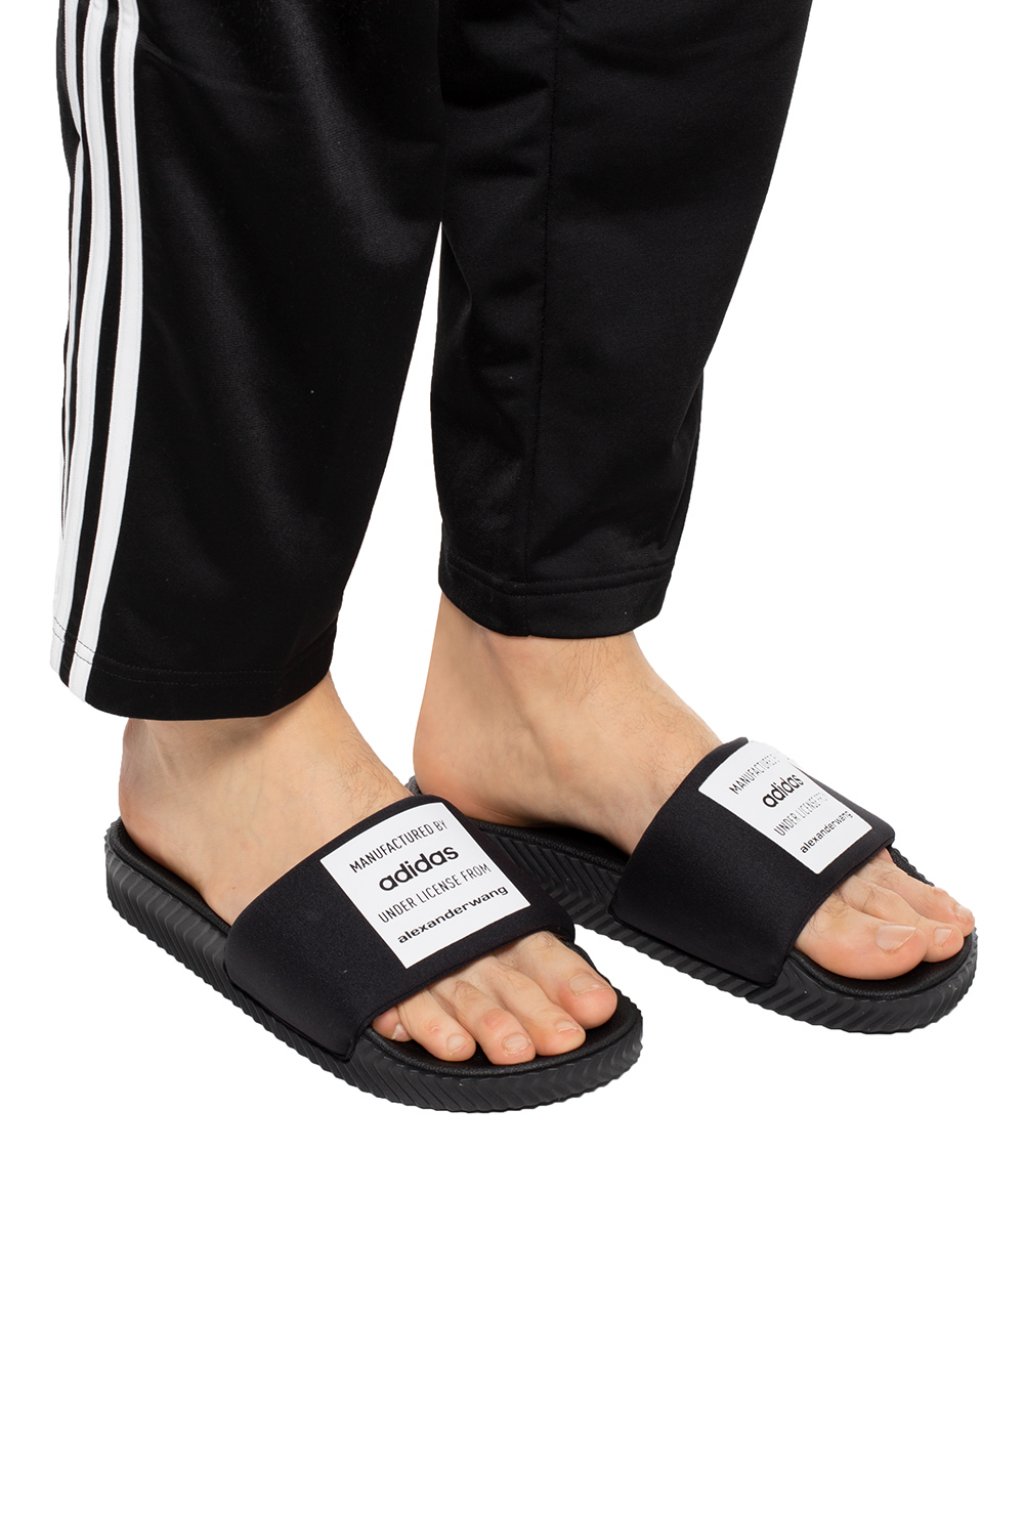 alexander wang adidas sandals